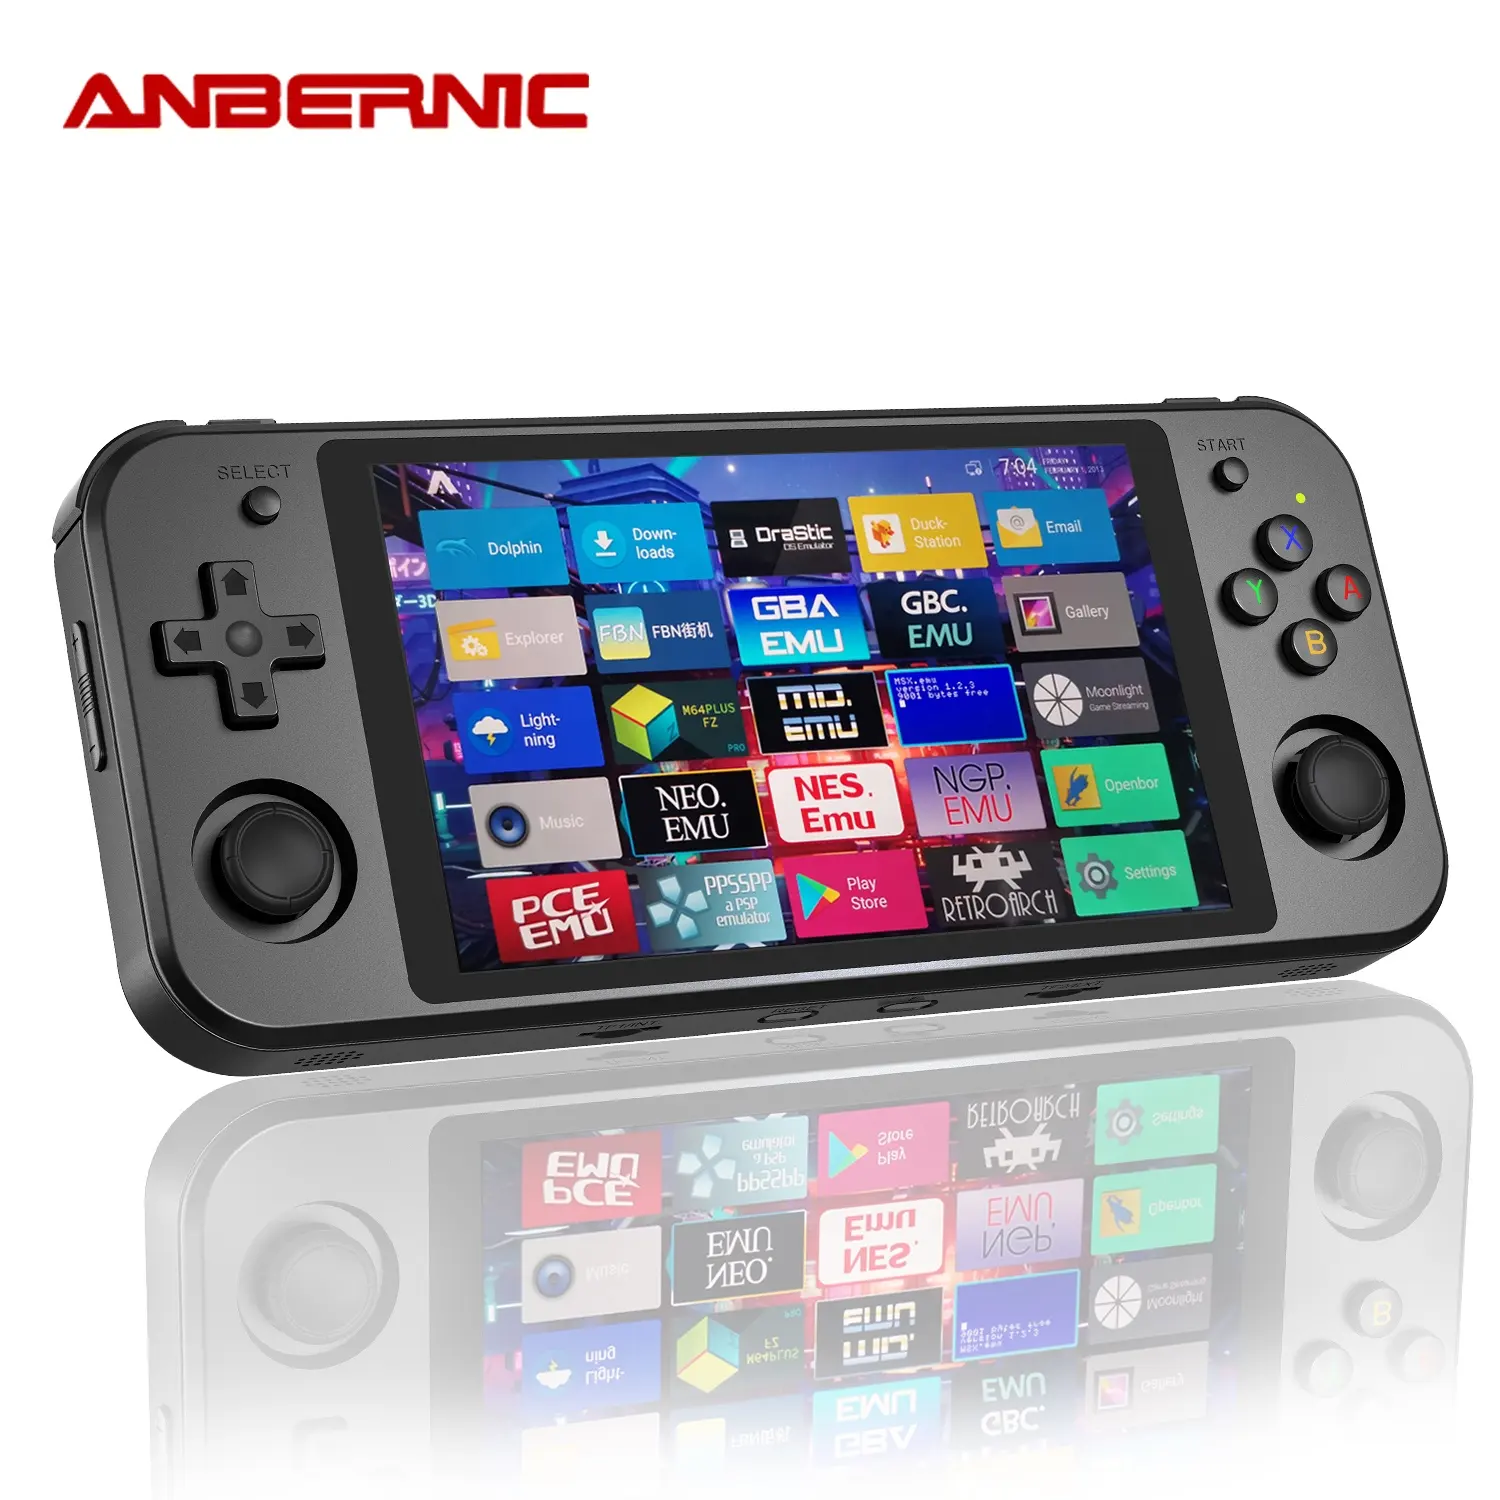 ANBERNICハンドヘルドゲームコンソールRK3399Linux Androidデュアルシステム5.36インチOCAスクリーンRG552レトロプレーヤー最高のPCゲーム